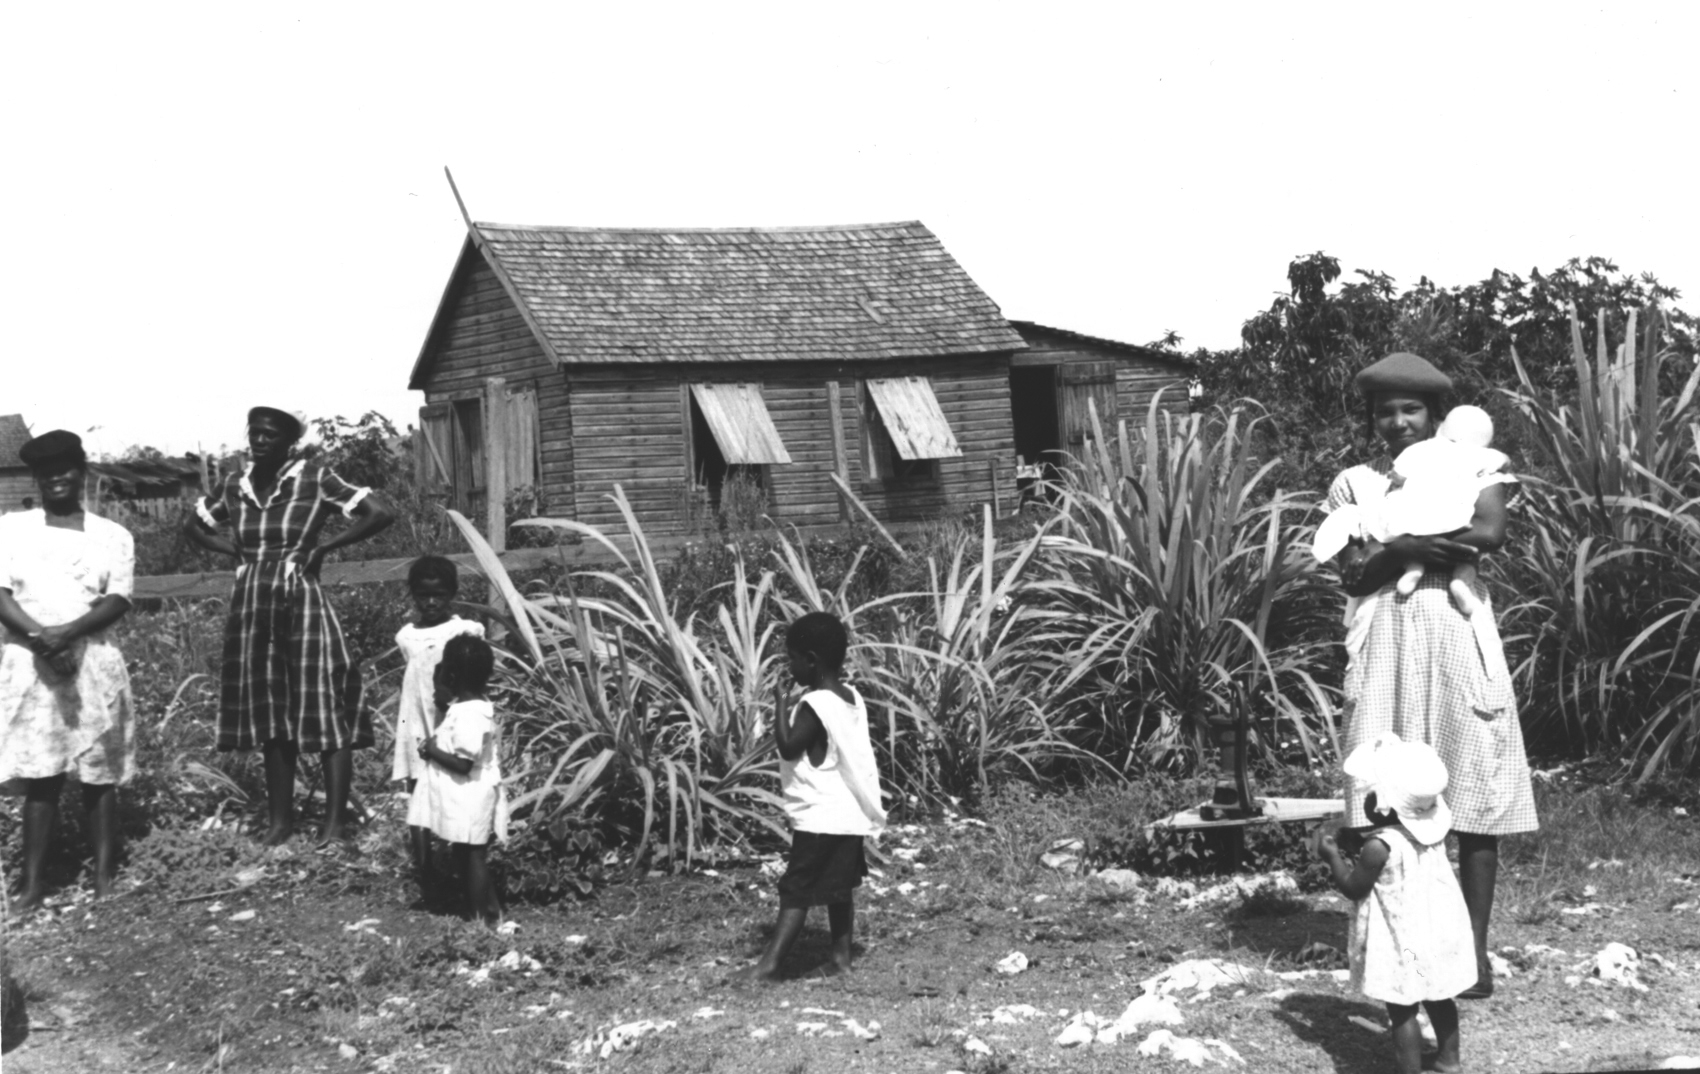 Pine Ridge family and home, 1950